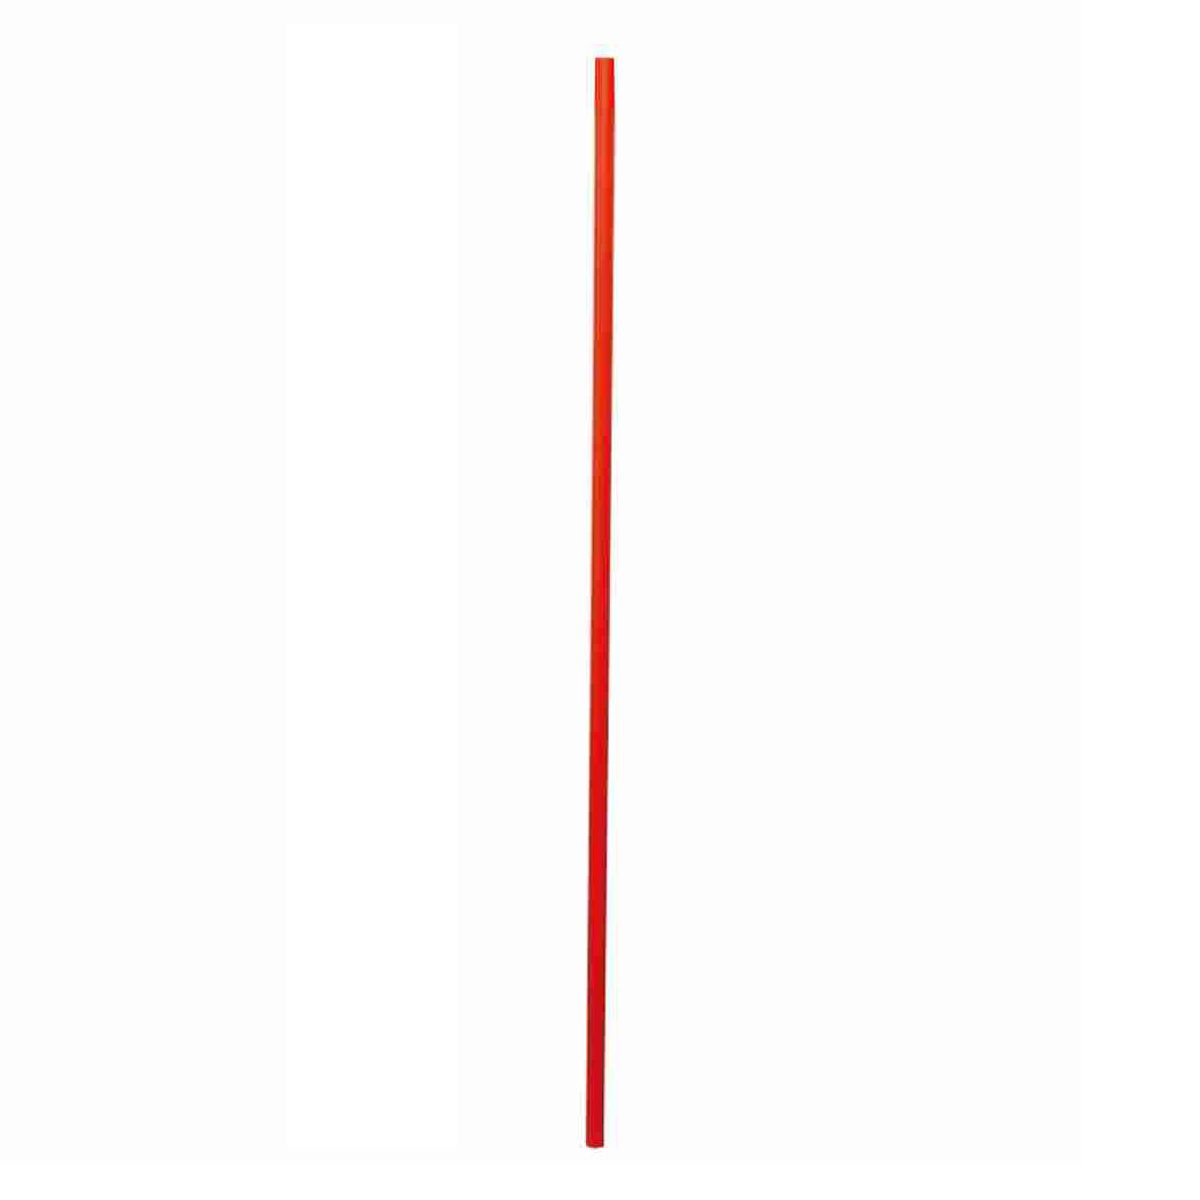 Markierungsrohr PP rot, Außen Ø 15,5 mm Wandstärke 0,8 mm, Länge 880 mm